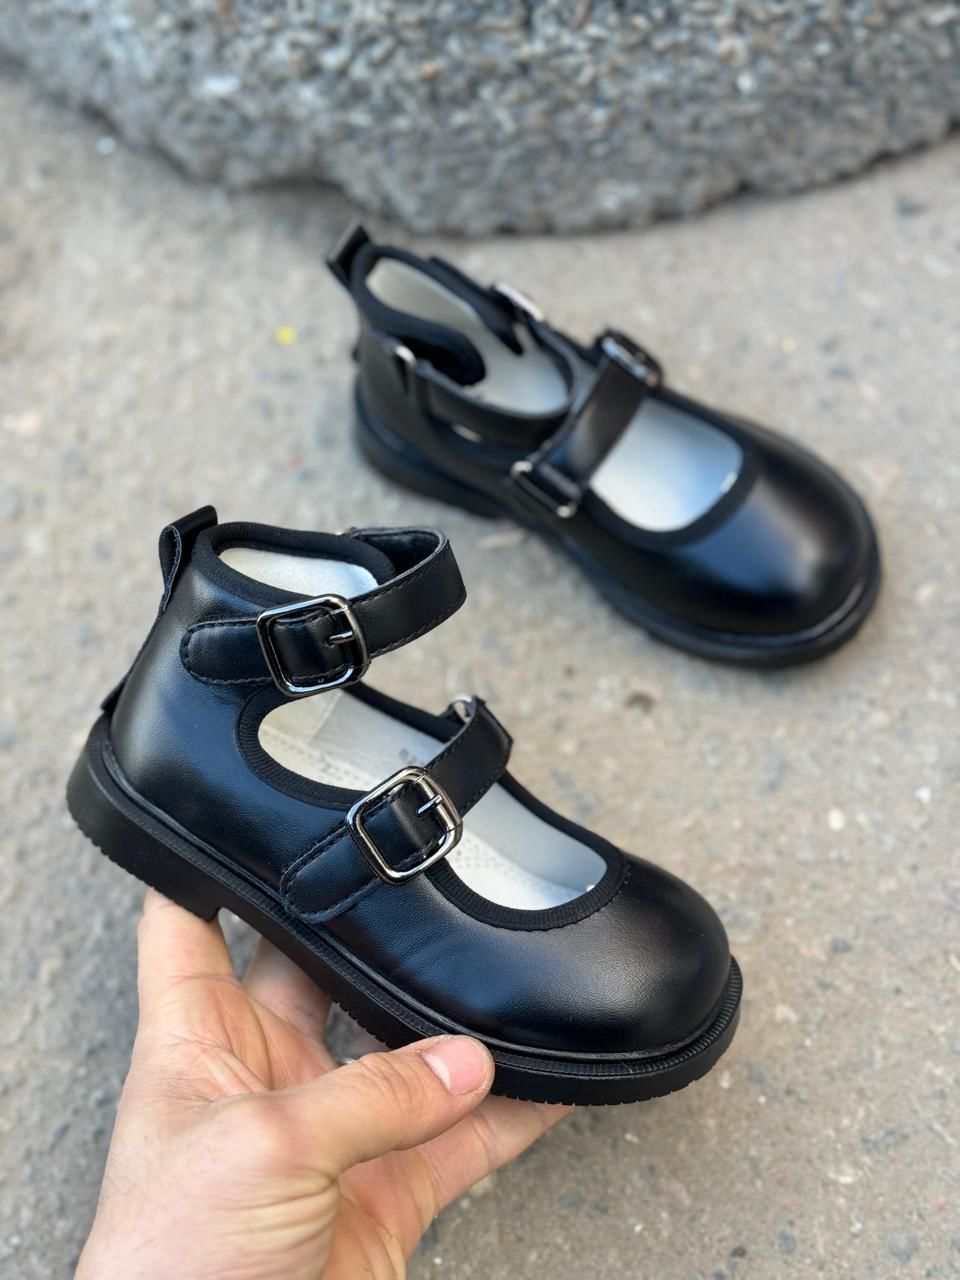 картинка Детские весенние туфли BESSKY SO-242-41 (8 пар в коробе, размер 26-31) от оптового интернет-магазина Shoesopt.by